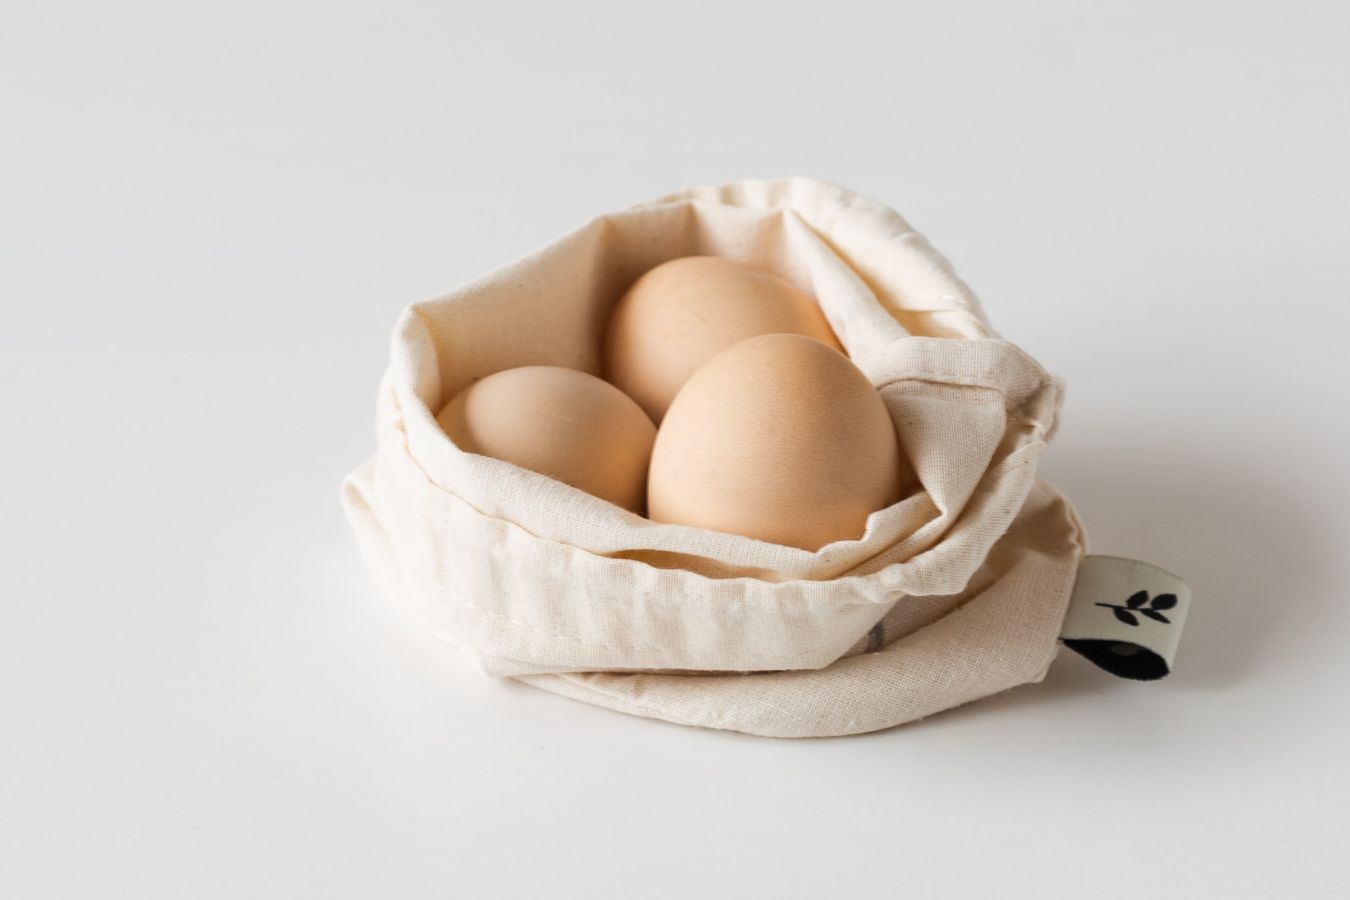 Нефритовые яйца: почему не надо засовывать в себя камни